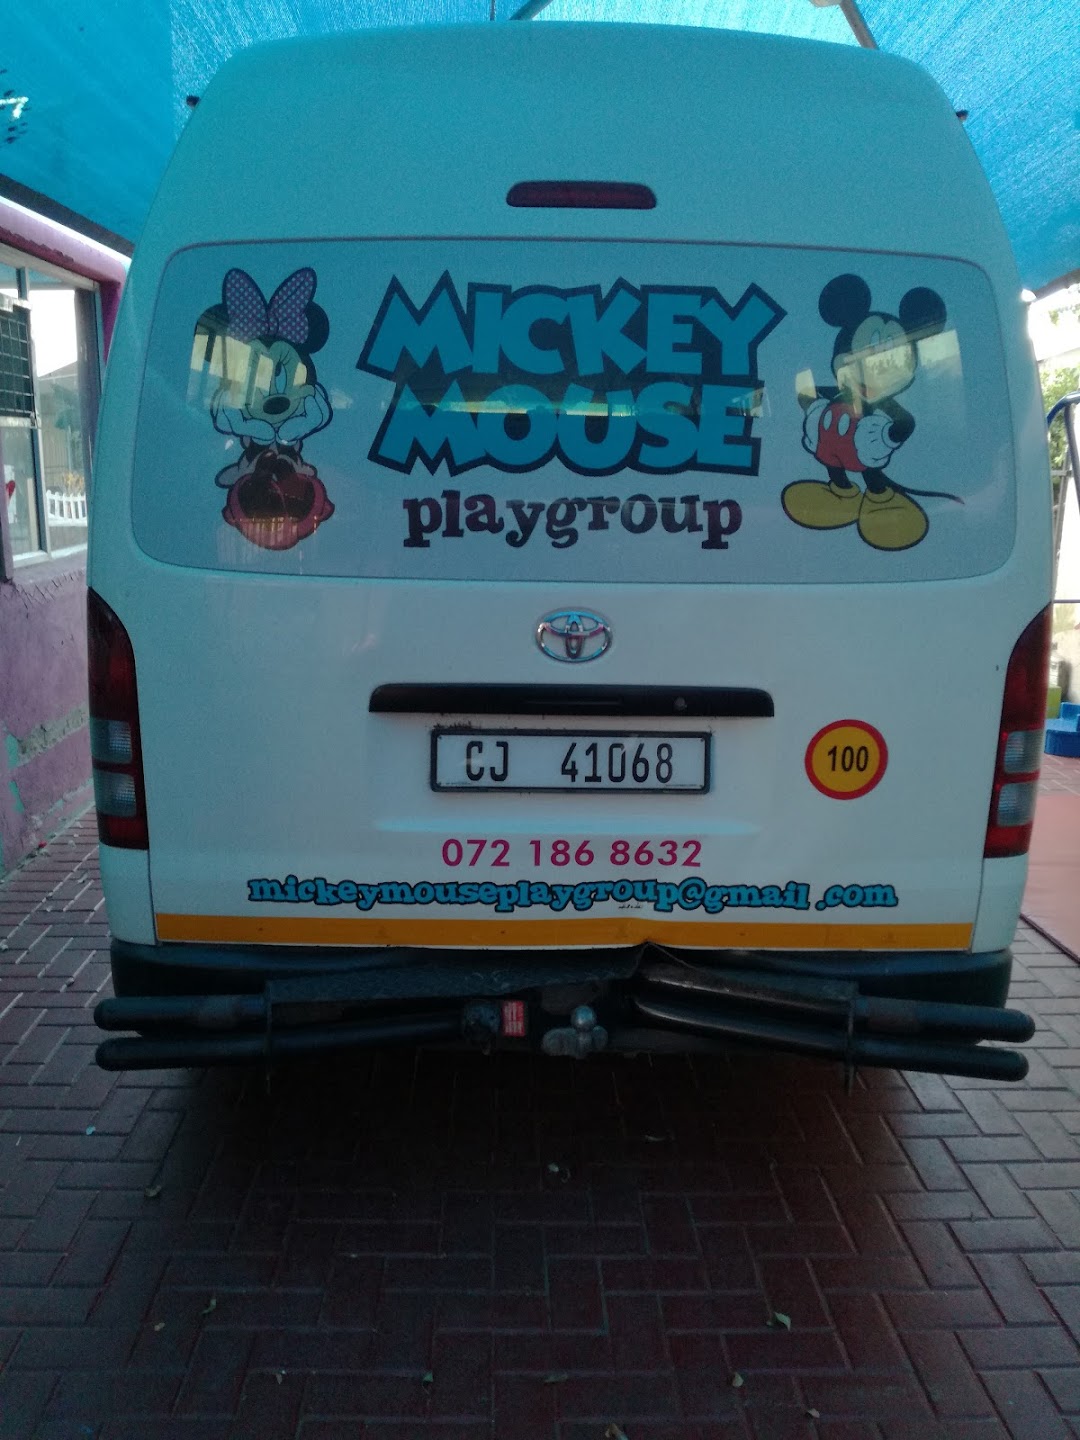 Mickey Mouse Speelgroep